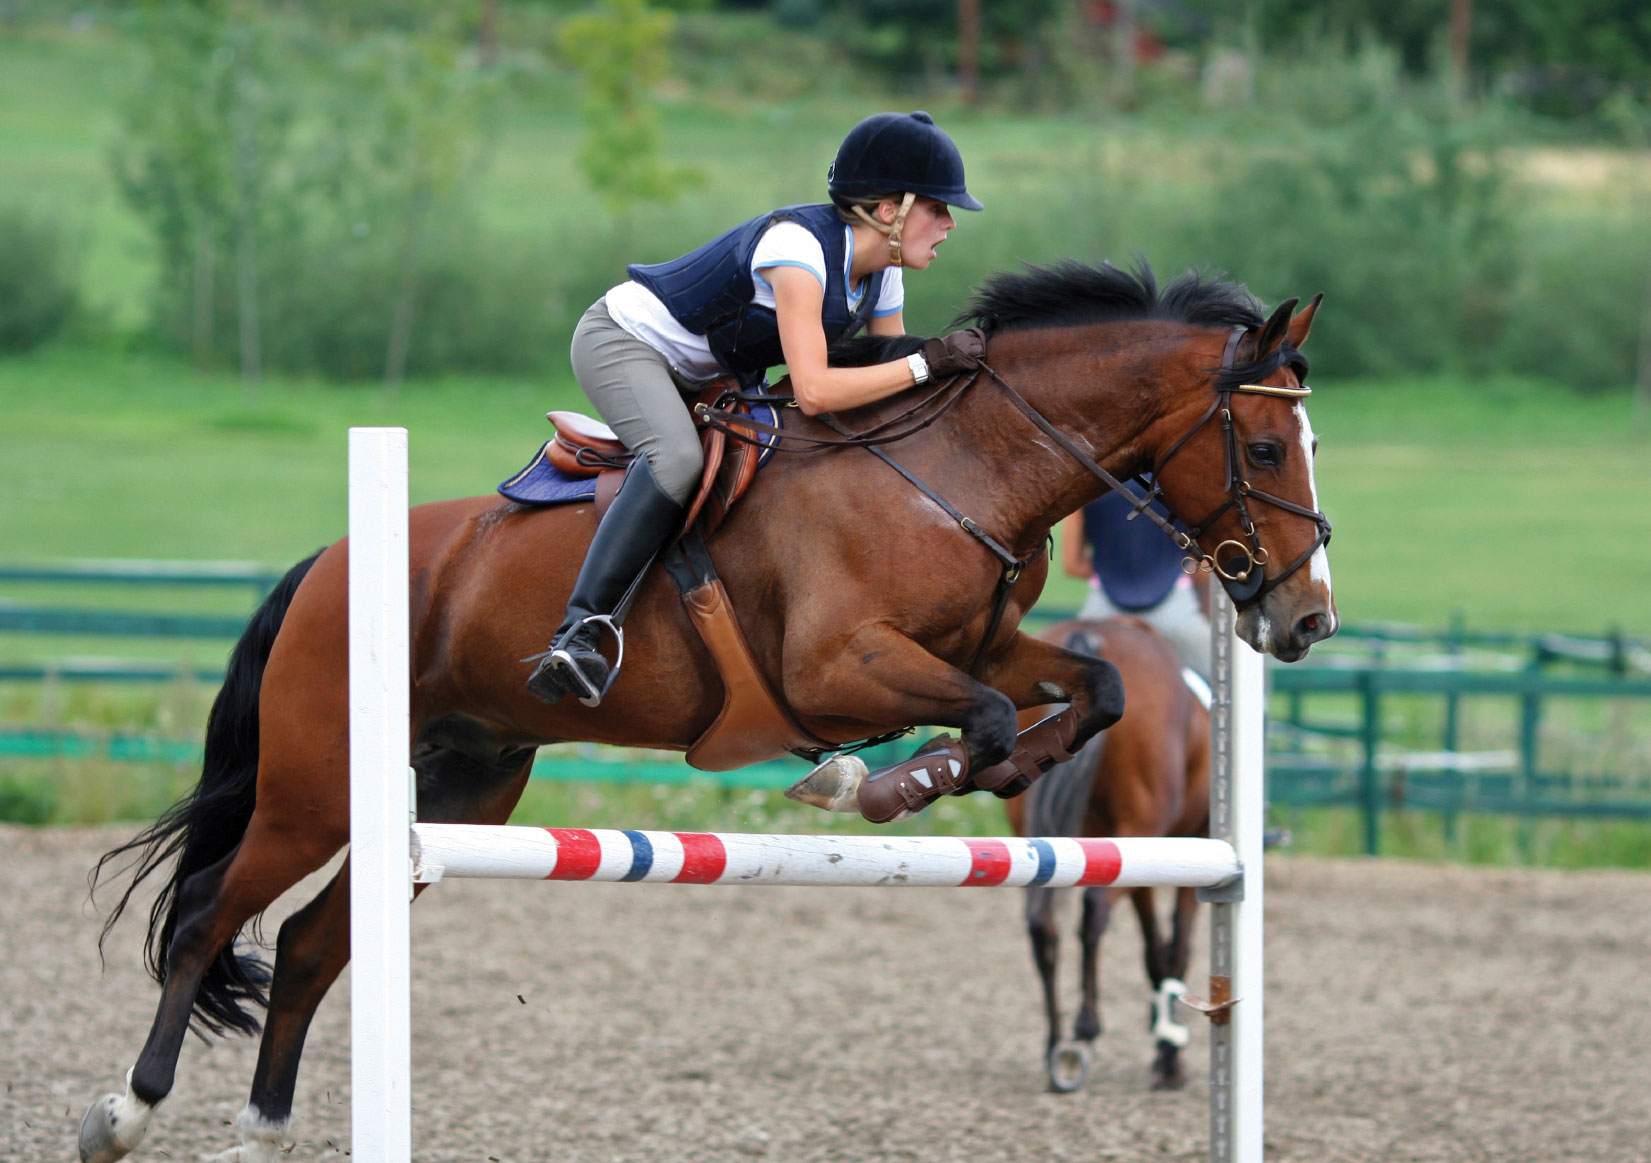 girl-horse-jumping.jpg